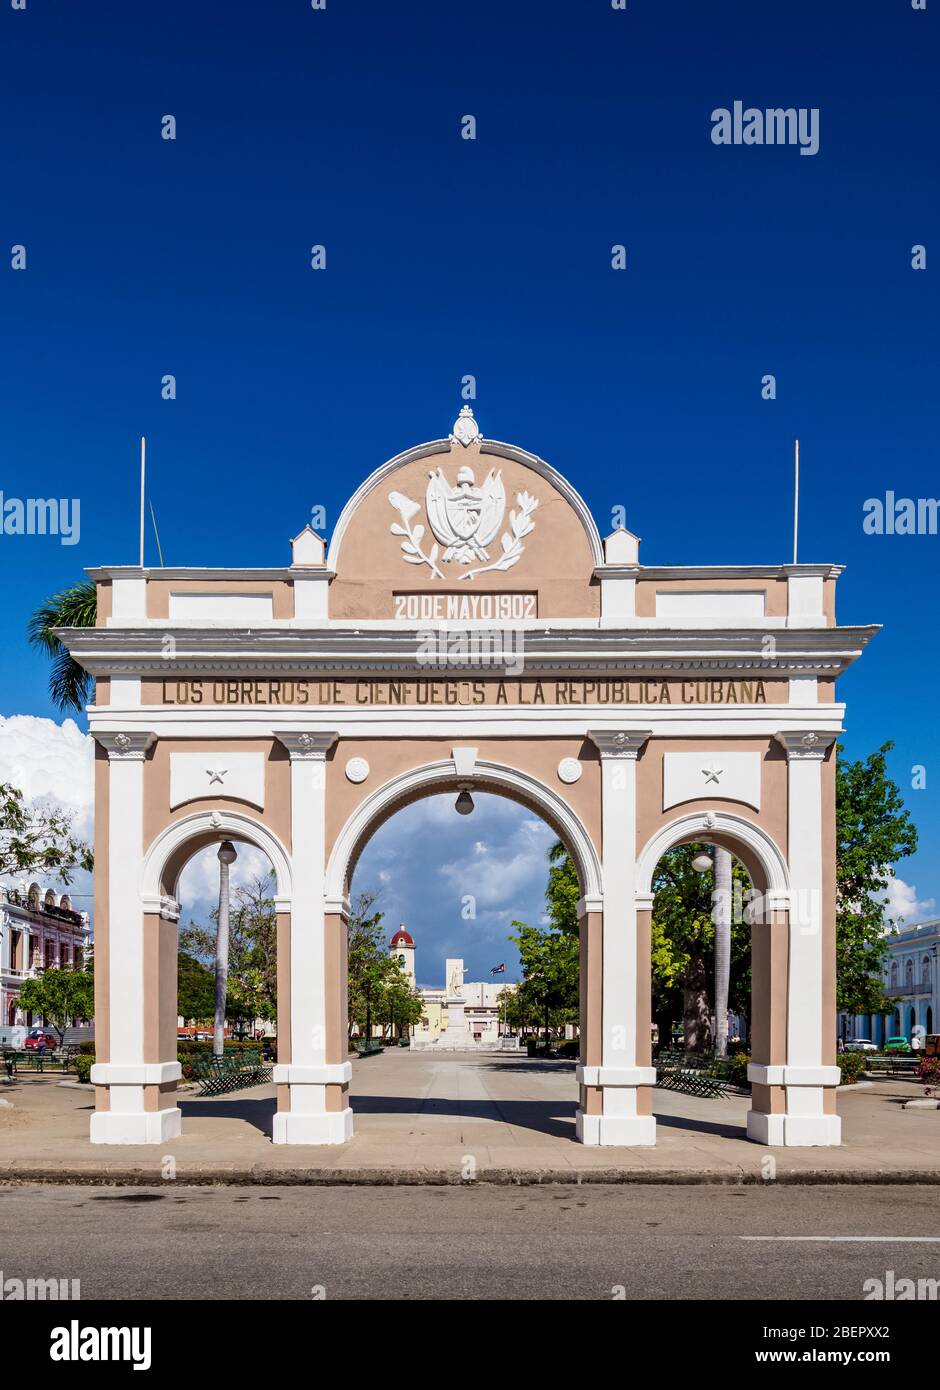 Arco de Triunfo, place principale, Cienfuegos, province de Cienfuegos, Cuba Banque D'Images